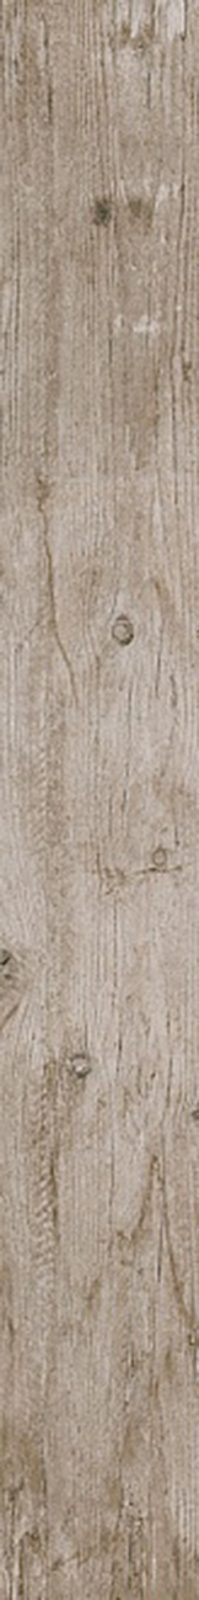 Антик Вуд Керамогранит бежевый обрезной DL750500R 20×160 (Малино)